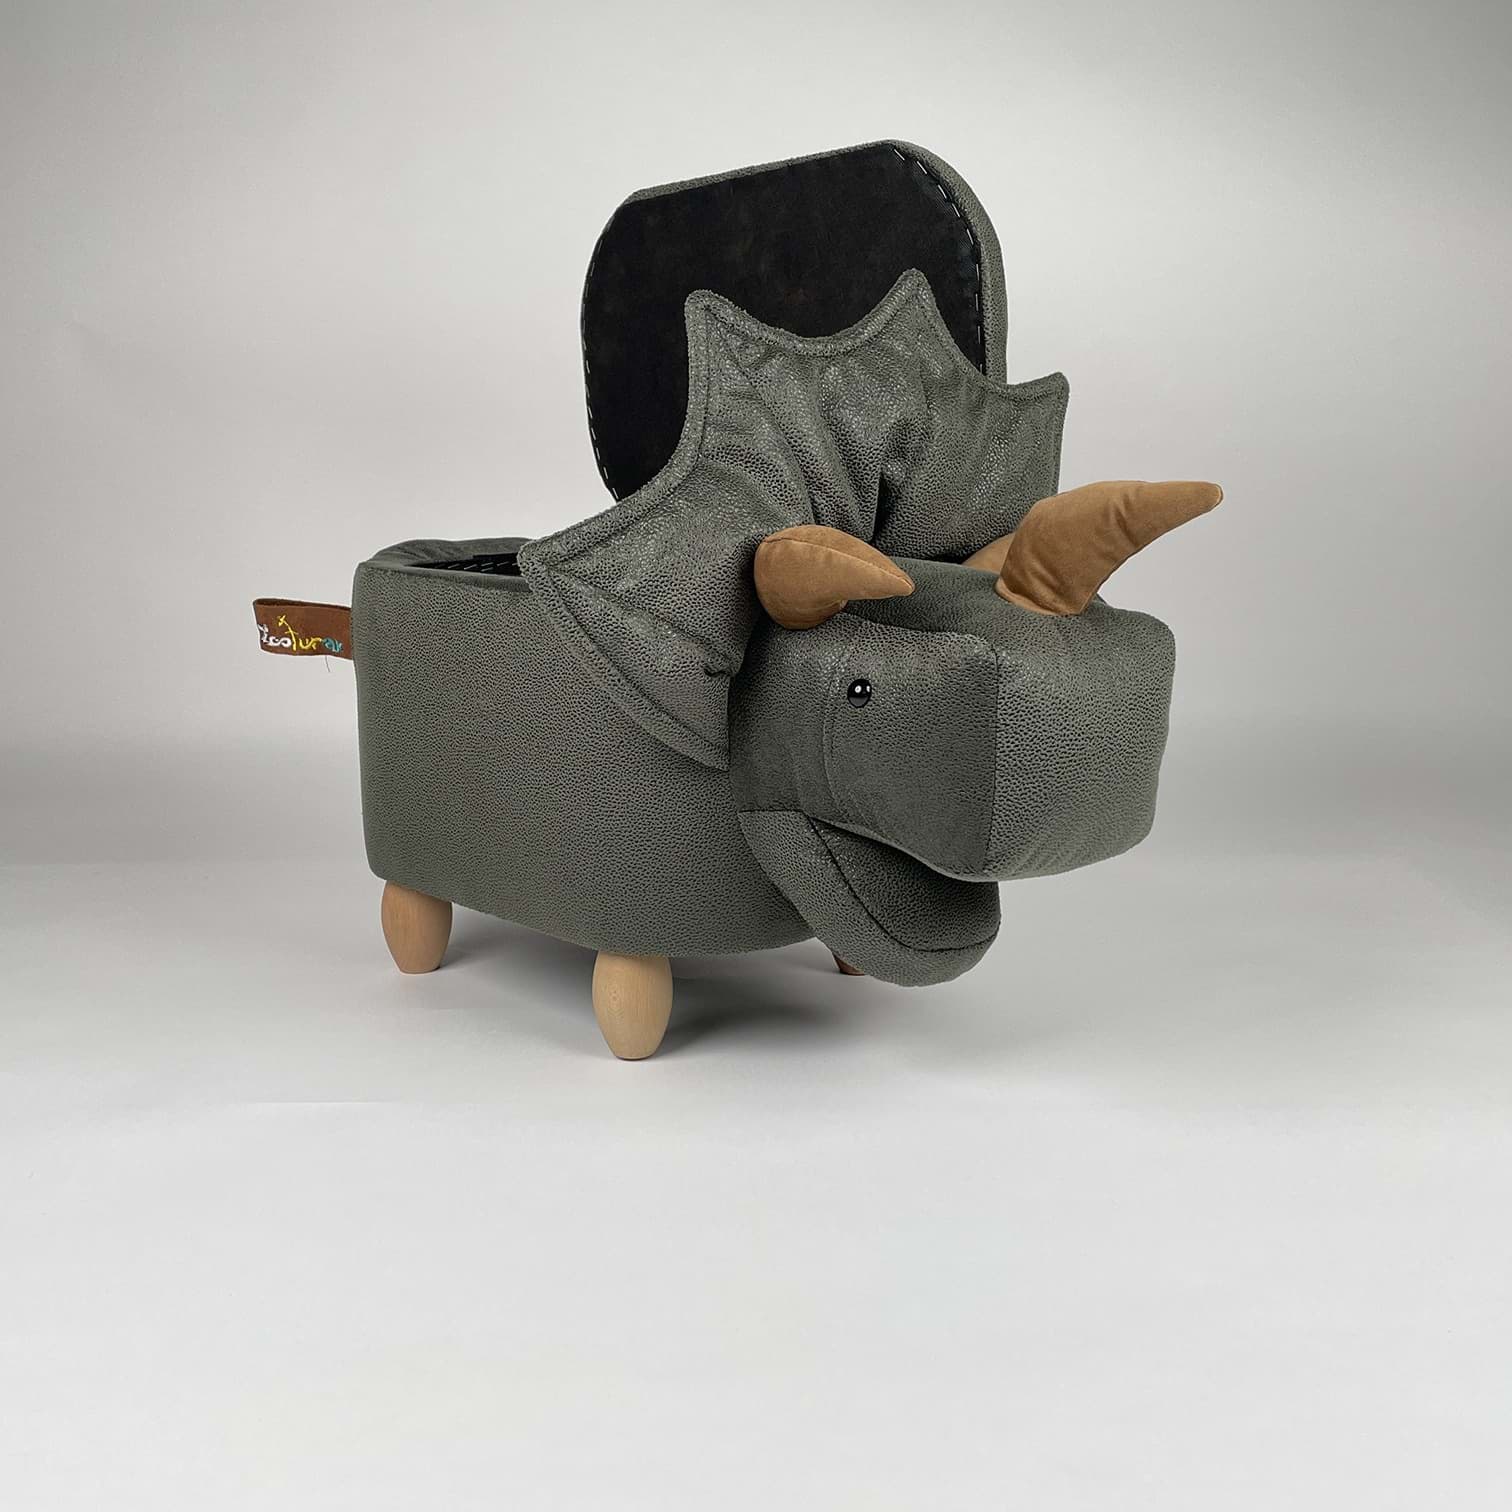 Boynuzlu Dinazor Pantos Hayvanlı puf çocuk koltuğu resmi